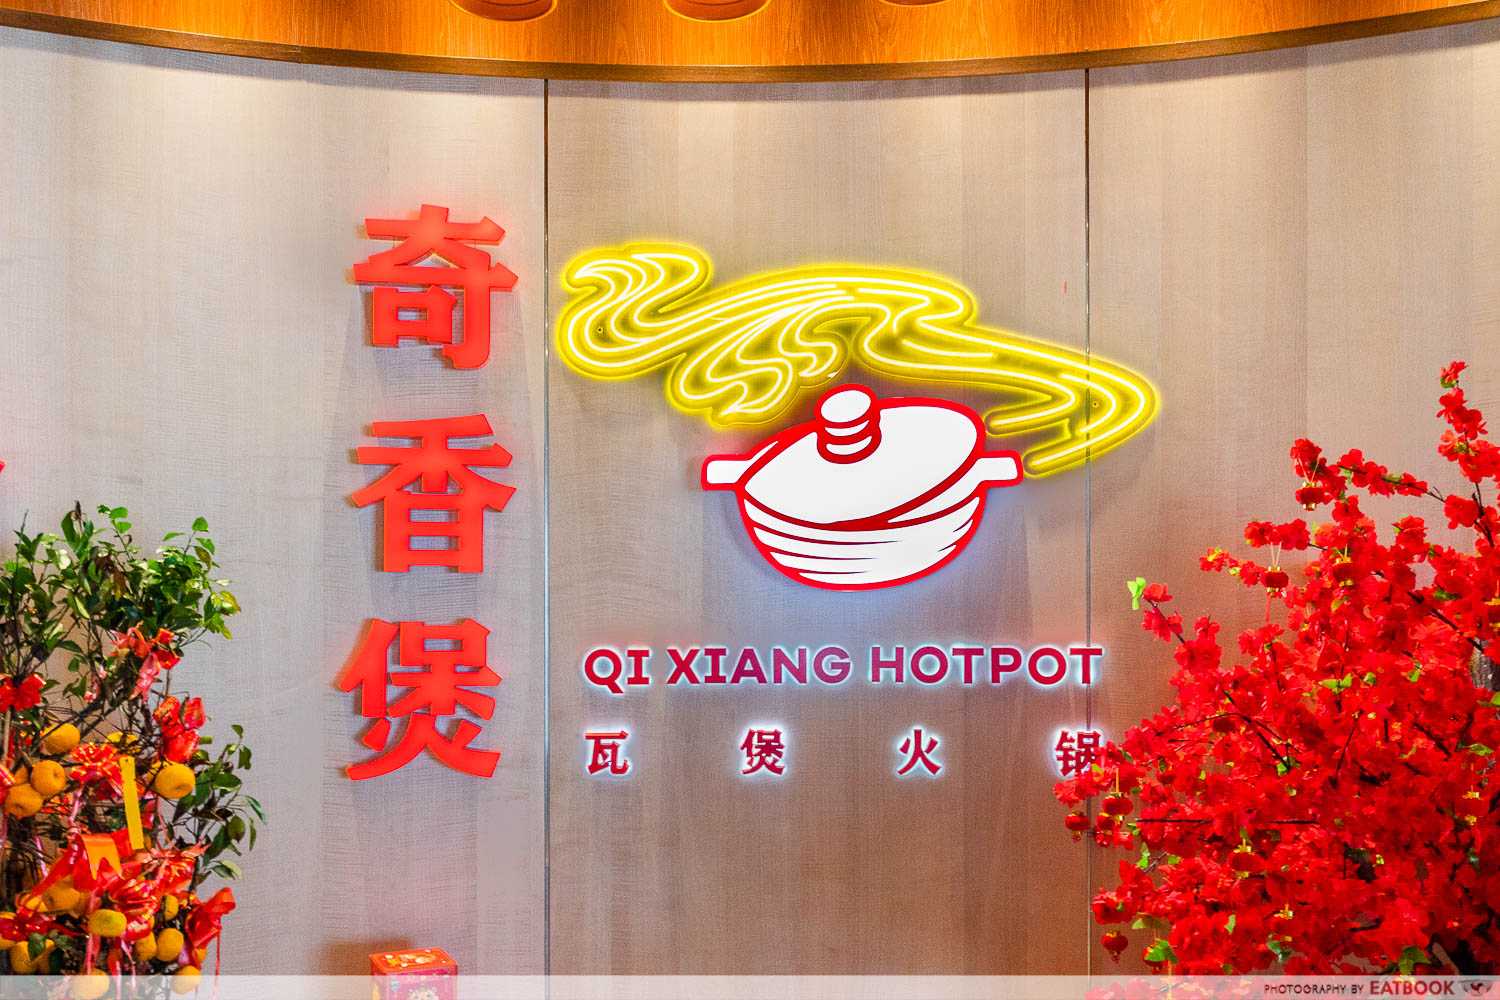 Qi Xiang Hotpot storefront